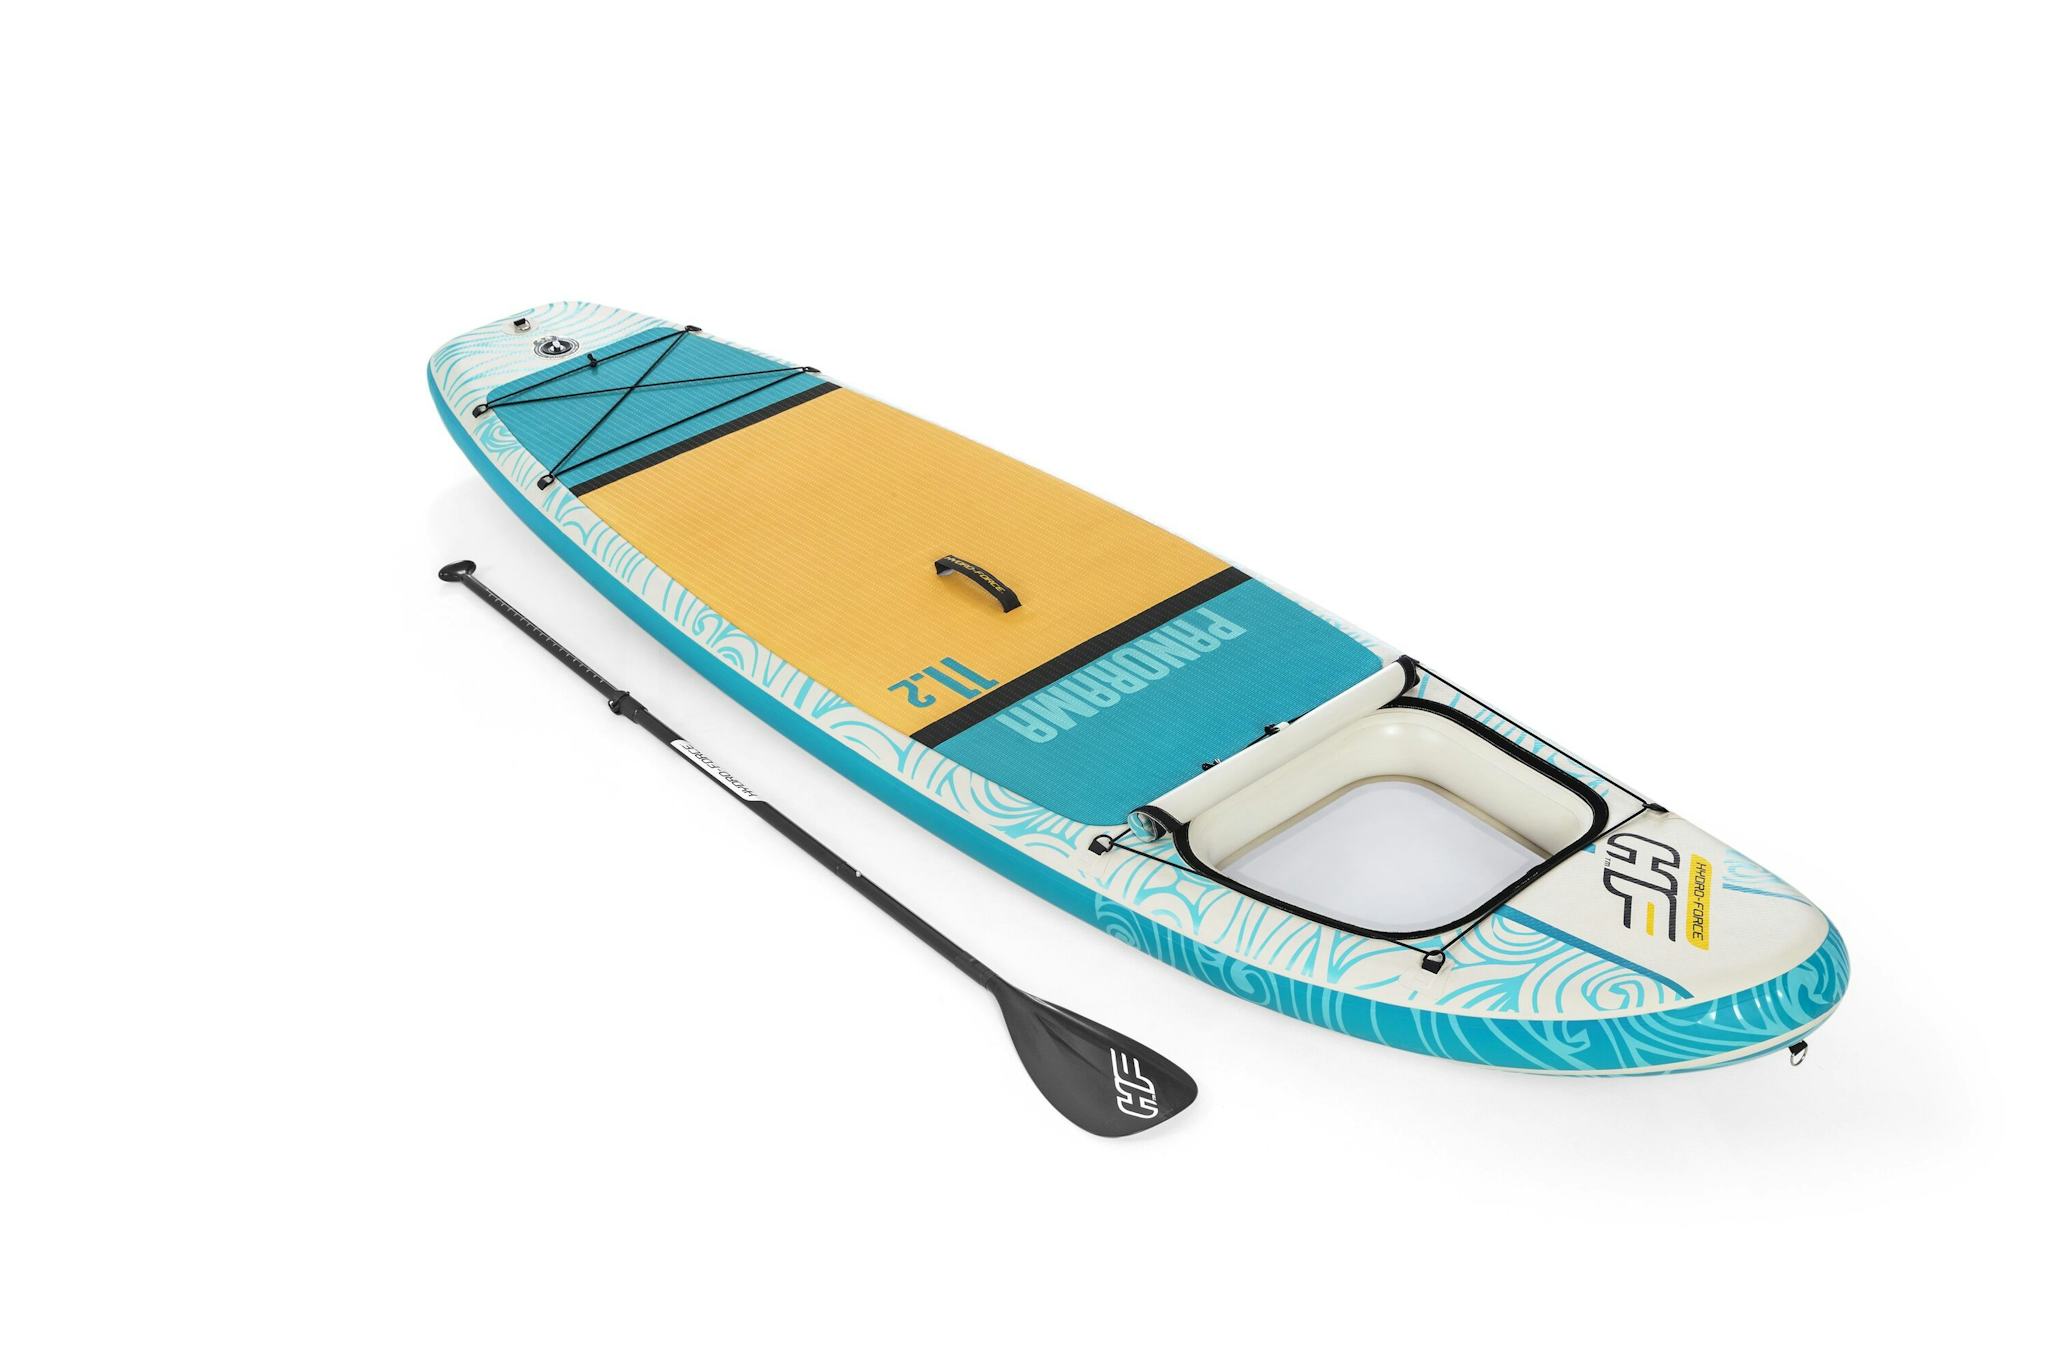 Sports d'eau Paddle gonflable Panorama Hydro-force™, 340 x 89 x 15 cm, 150 kg max, fenêtre transparente, poignées de transport, pompe, leash, sac de transport et pagaie Bestway 1